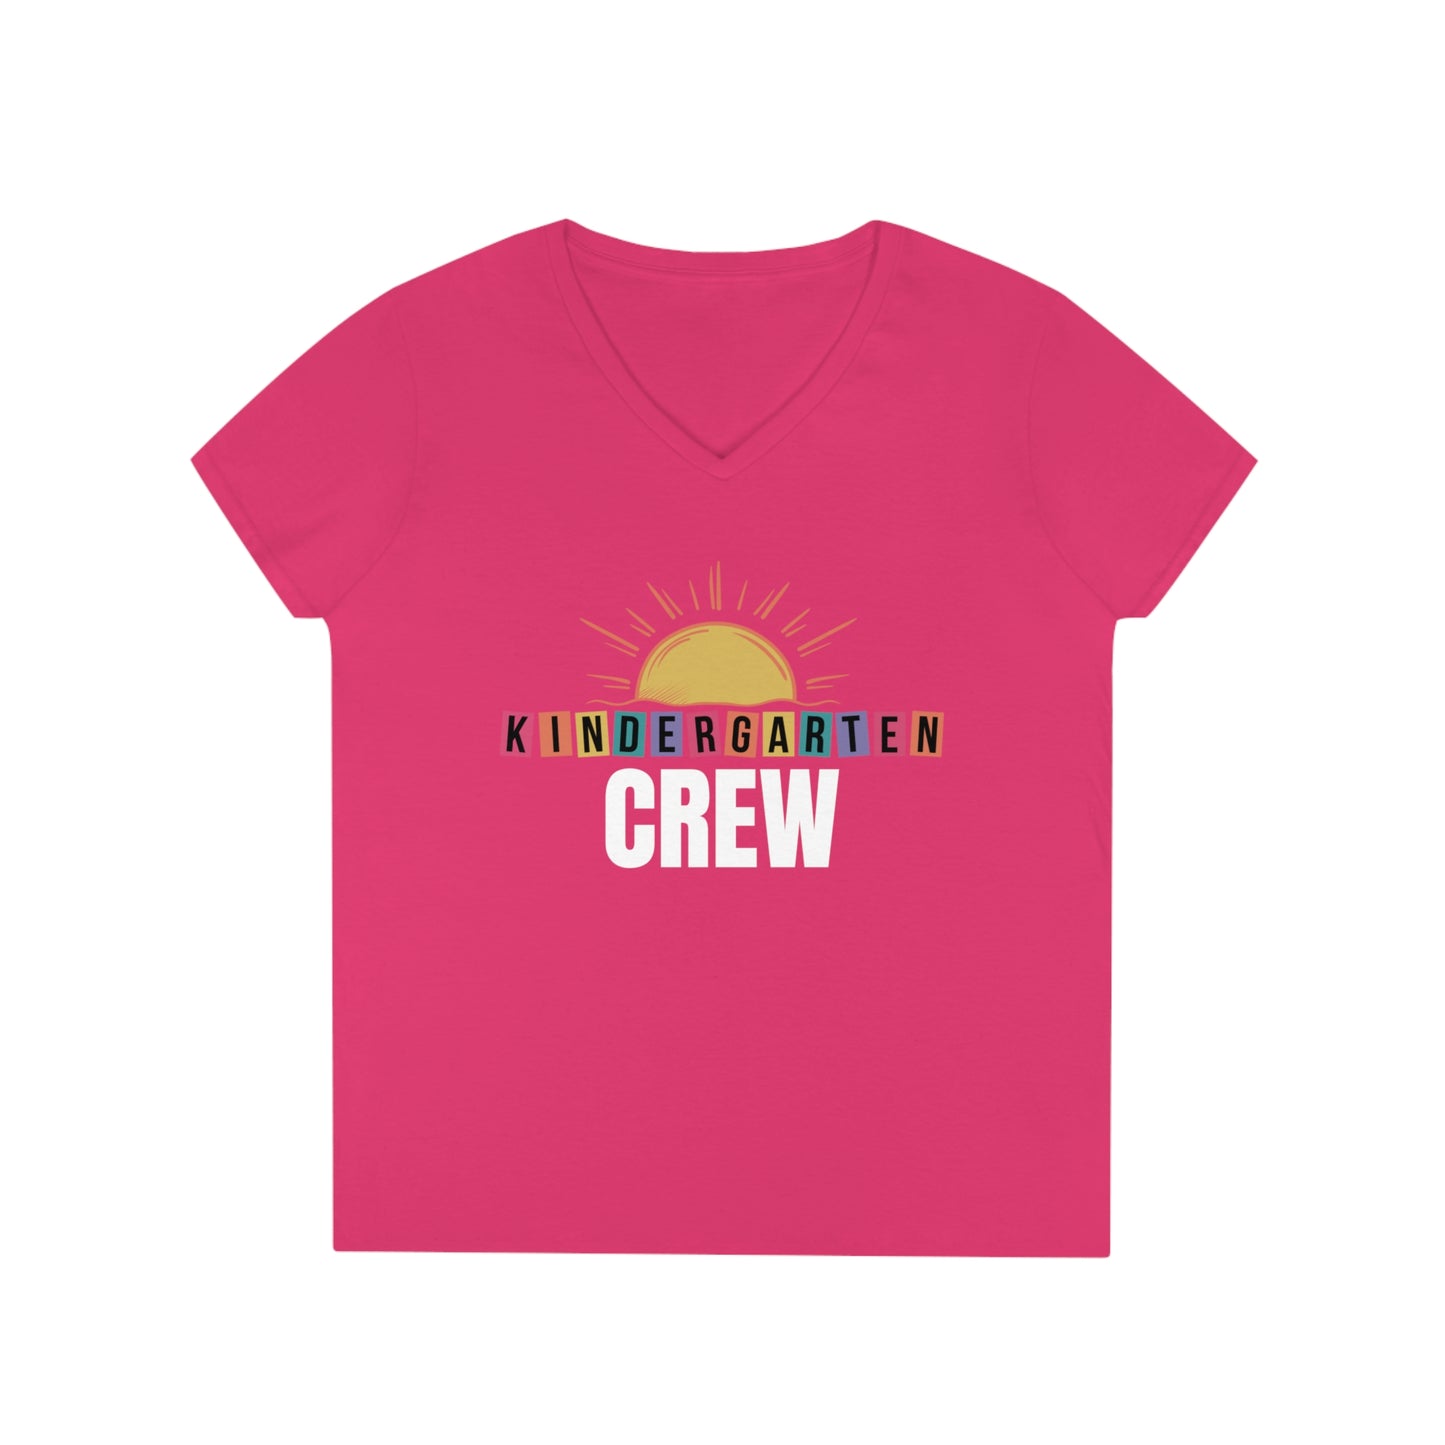 Kindergarten Crew - Ladies' V-Neck T-Shirt